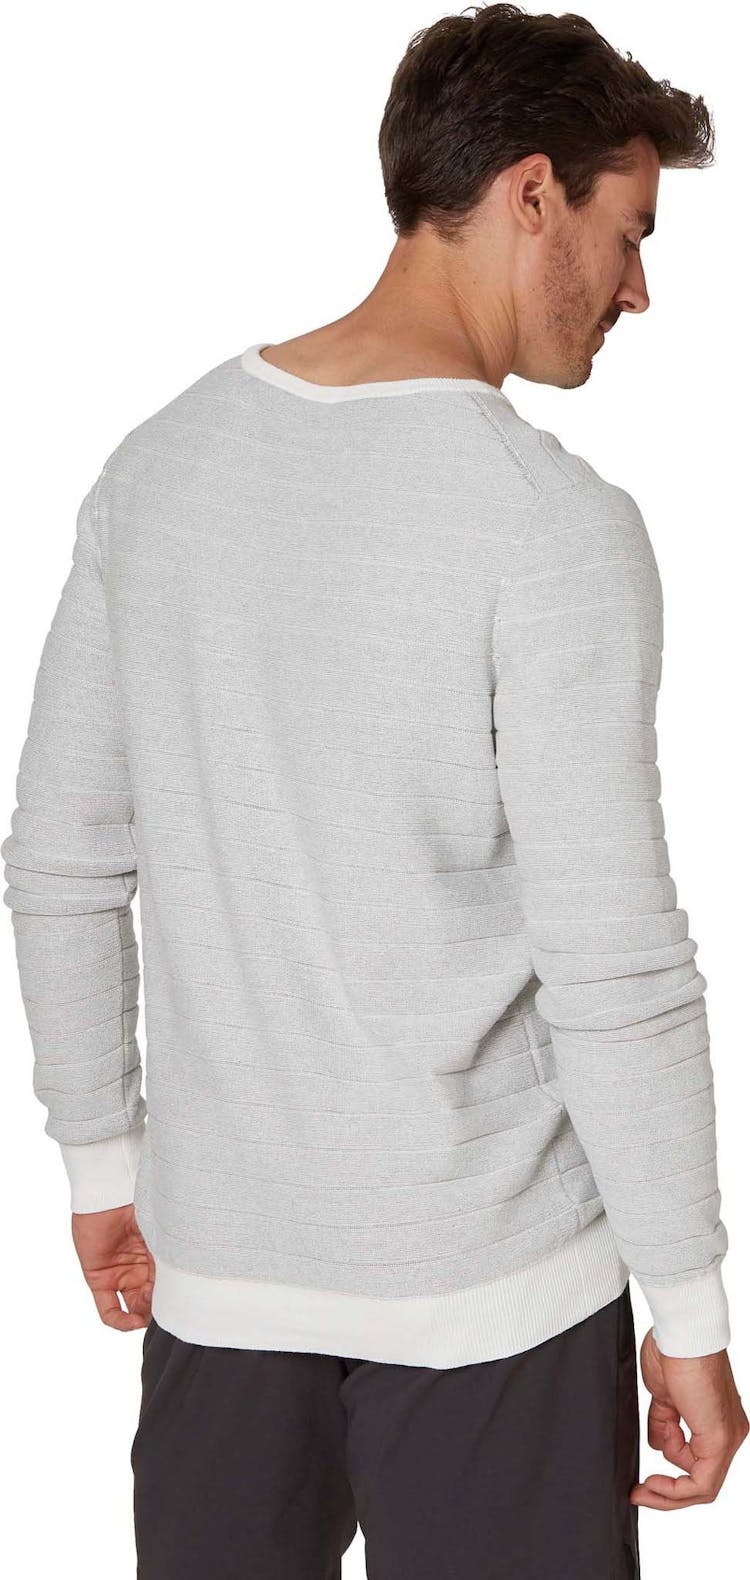 Numéro de l'image de la galerie de produits 3 pour le produit Chandail d'été en tricot léger Fjord - Homme